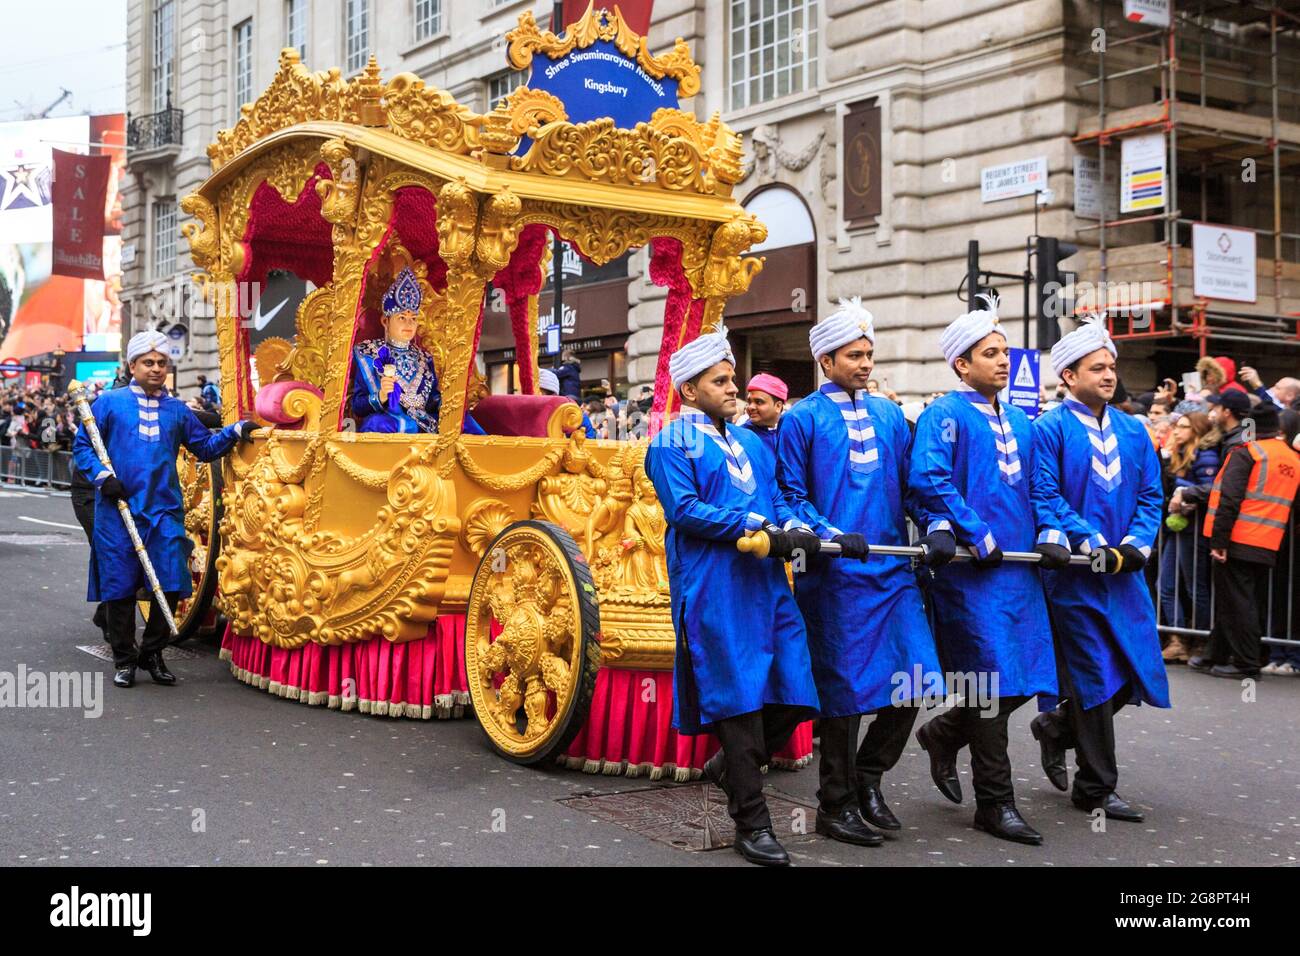 Golden Carriage und Teilnehmer von Shree Swaminarayan Mandir Kingsbury repräsentieren den Stadtteil Kingsbury, London New Year's Day Parade, England, Großbritannien Stockfoto